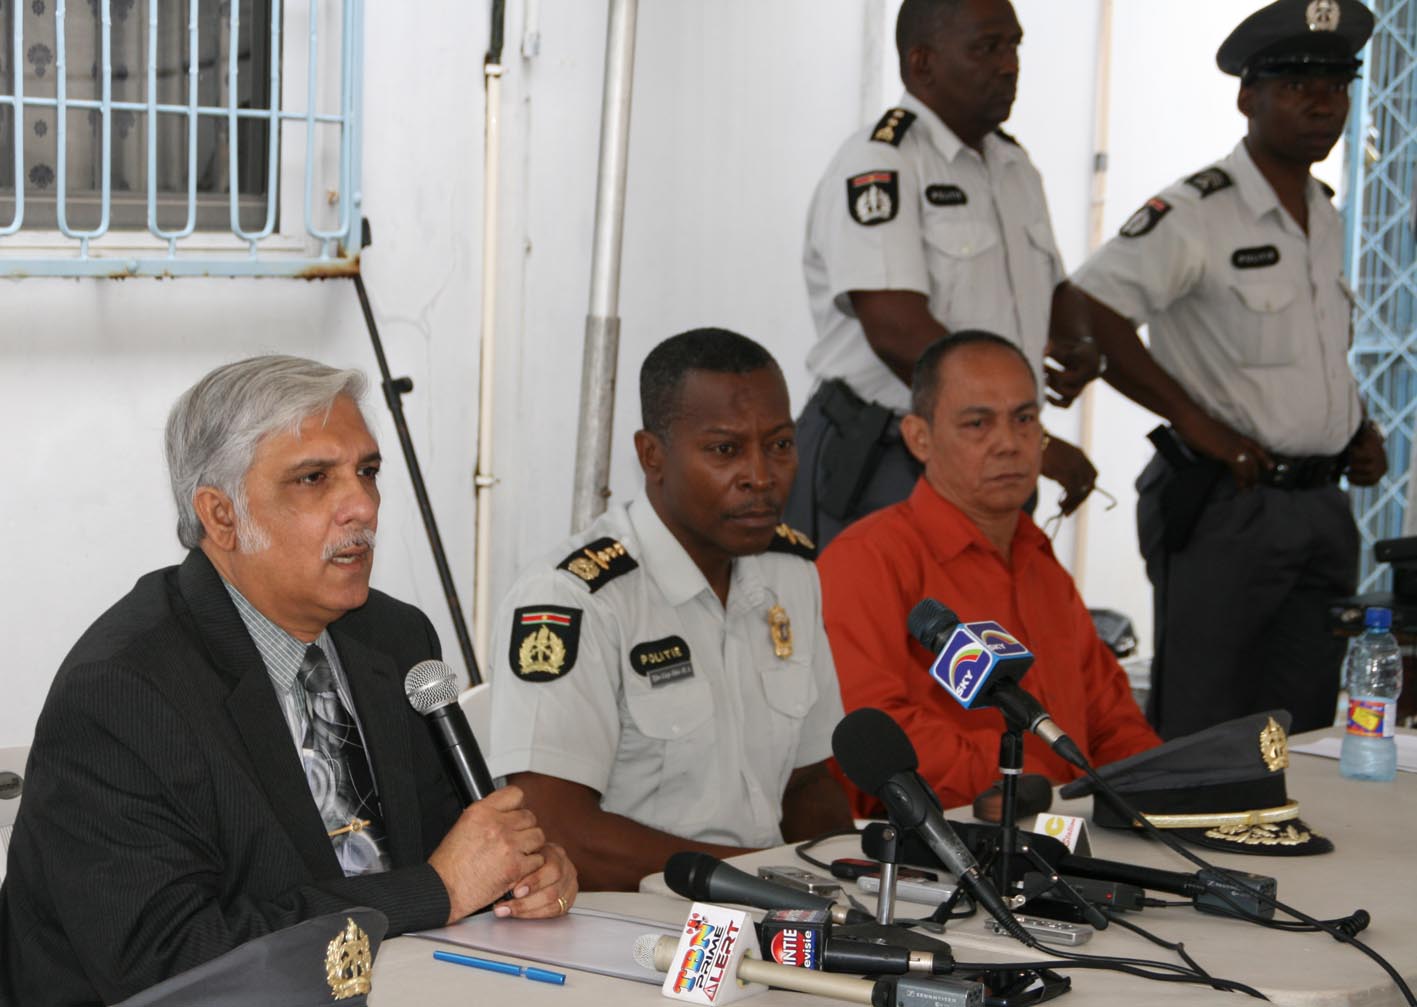 Persconferentie politie Suriname i.v.m. drugsvangst